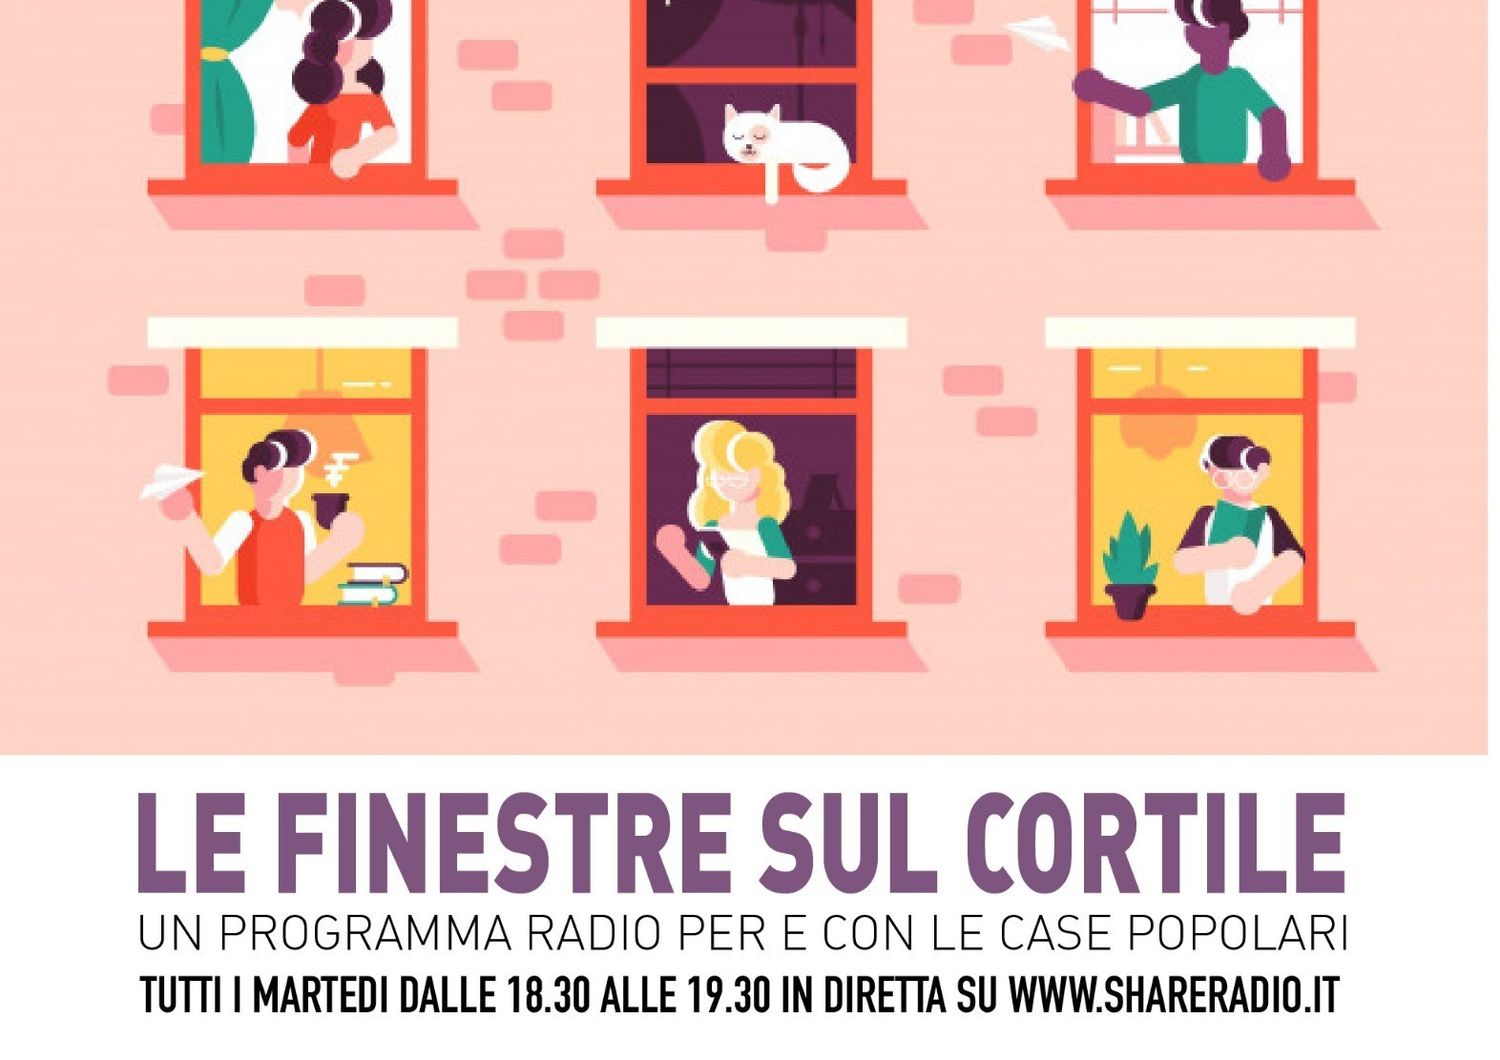 Coronavirus Finestre sul cortile radio shareradio Milano case popolari quarantena